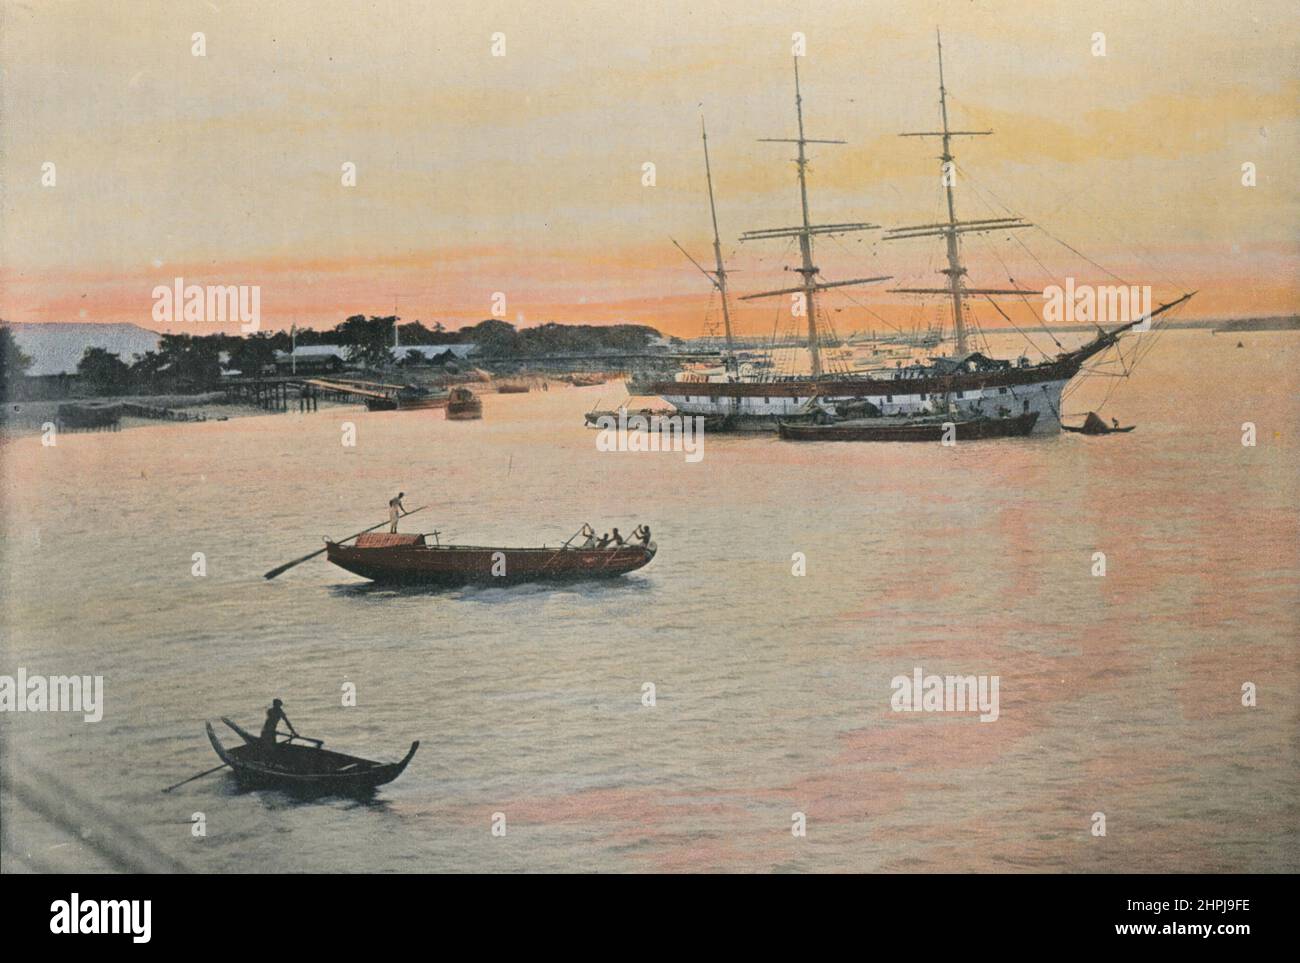 CHITTAGONG Autour Du Monde Birmanie - Birma 1895 - 1900 Sites et Paysages (2) - 19. Jahrhundert französisch kolorierter Fotografie-Druck Stockfoto